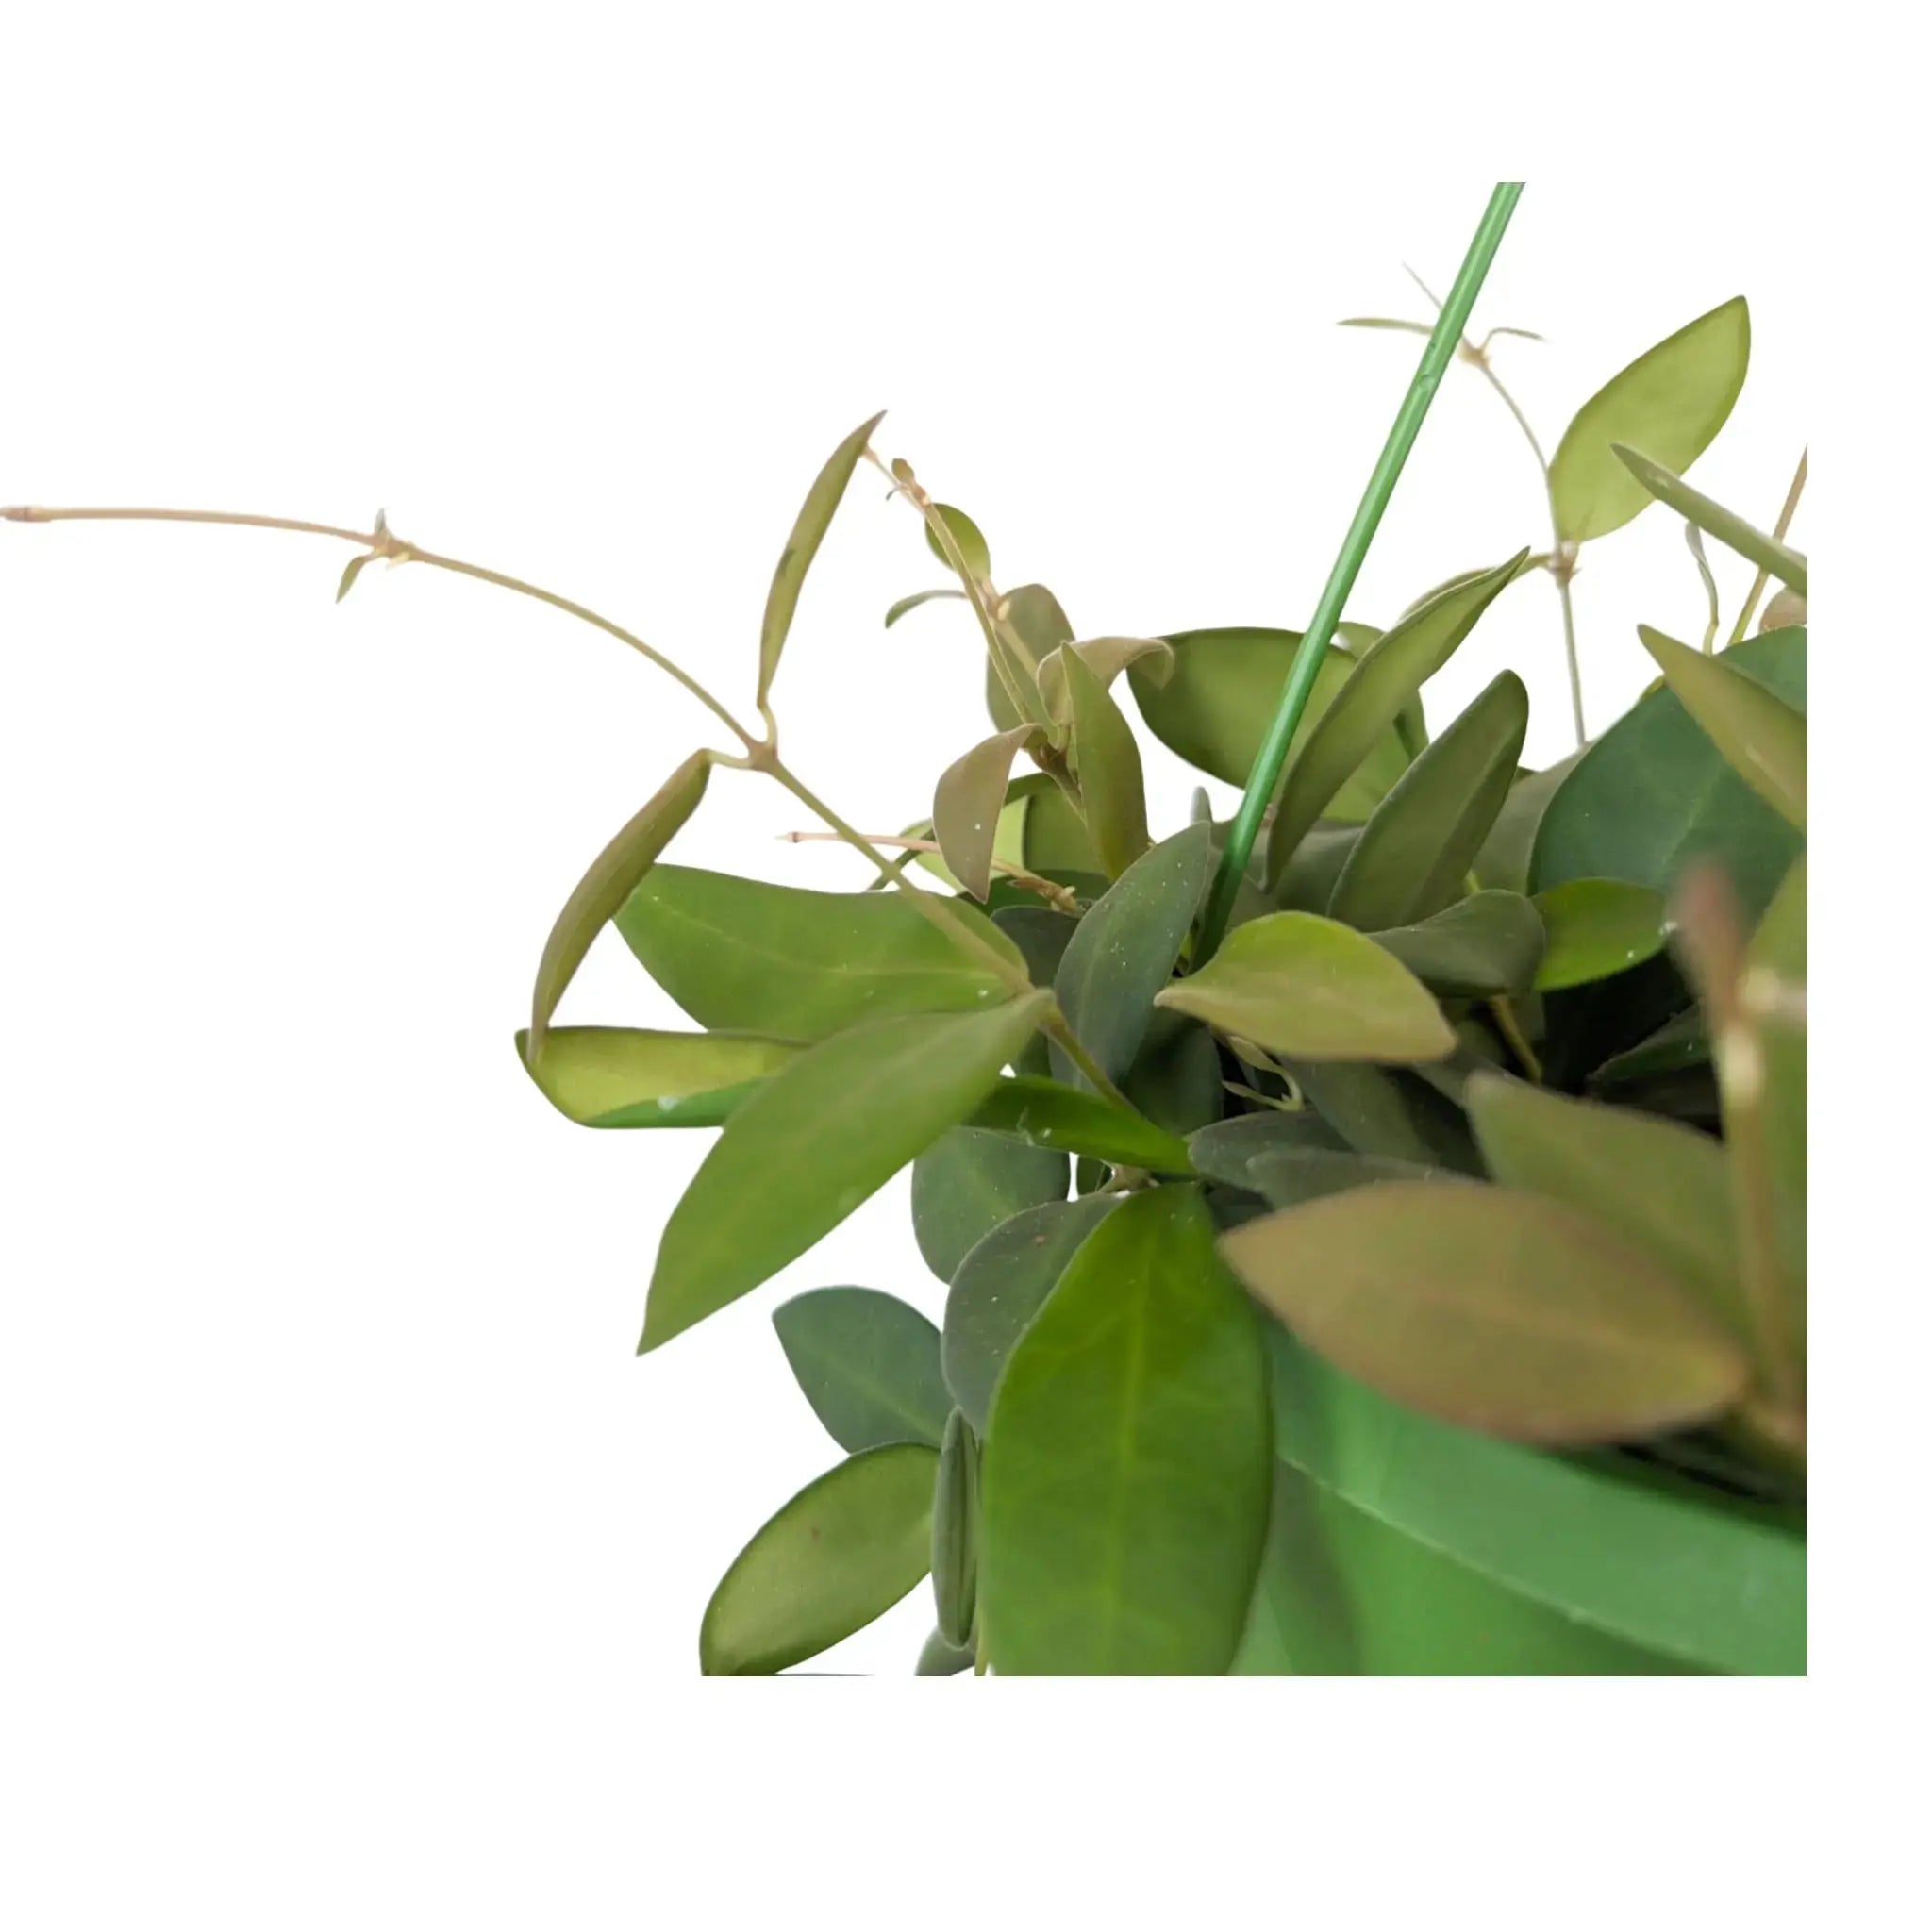 Hoya burtoniae Hanging Plant - Wax Plant Leaf Culture